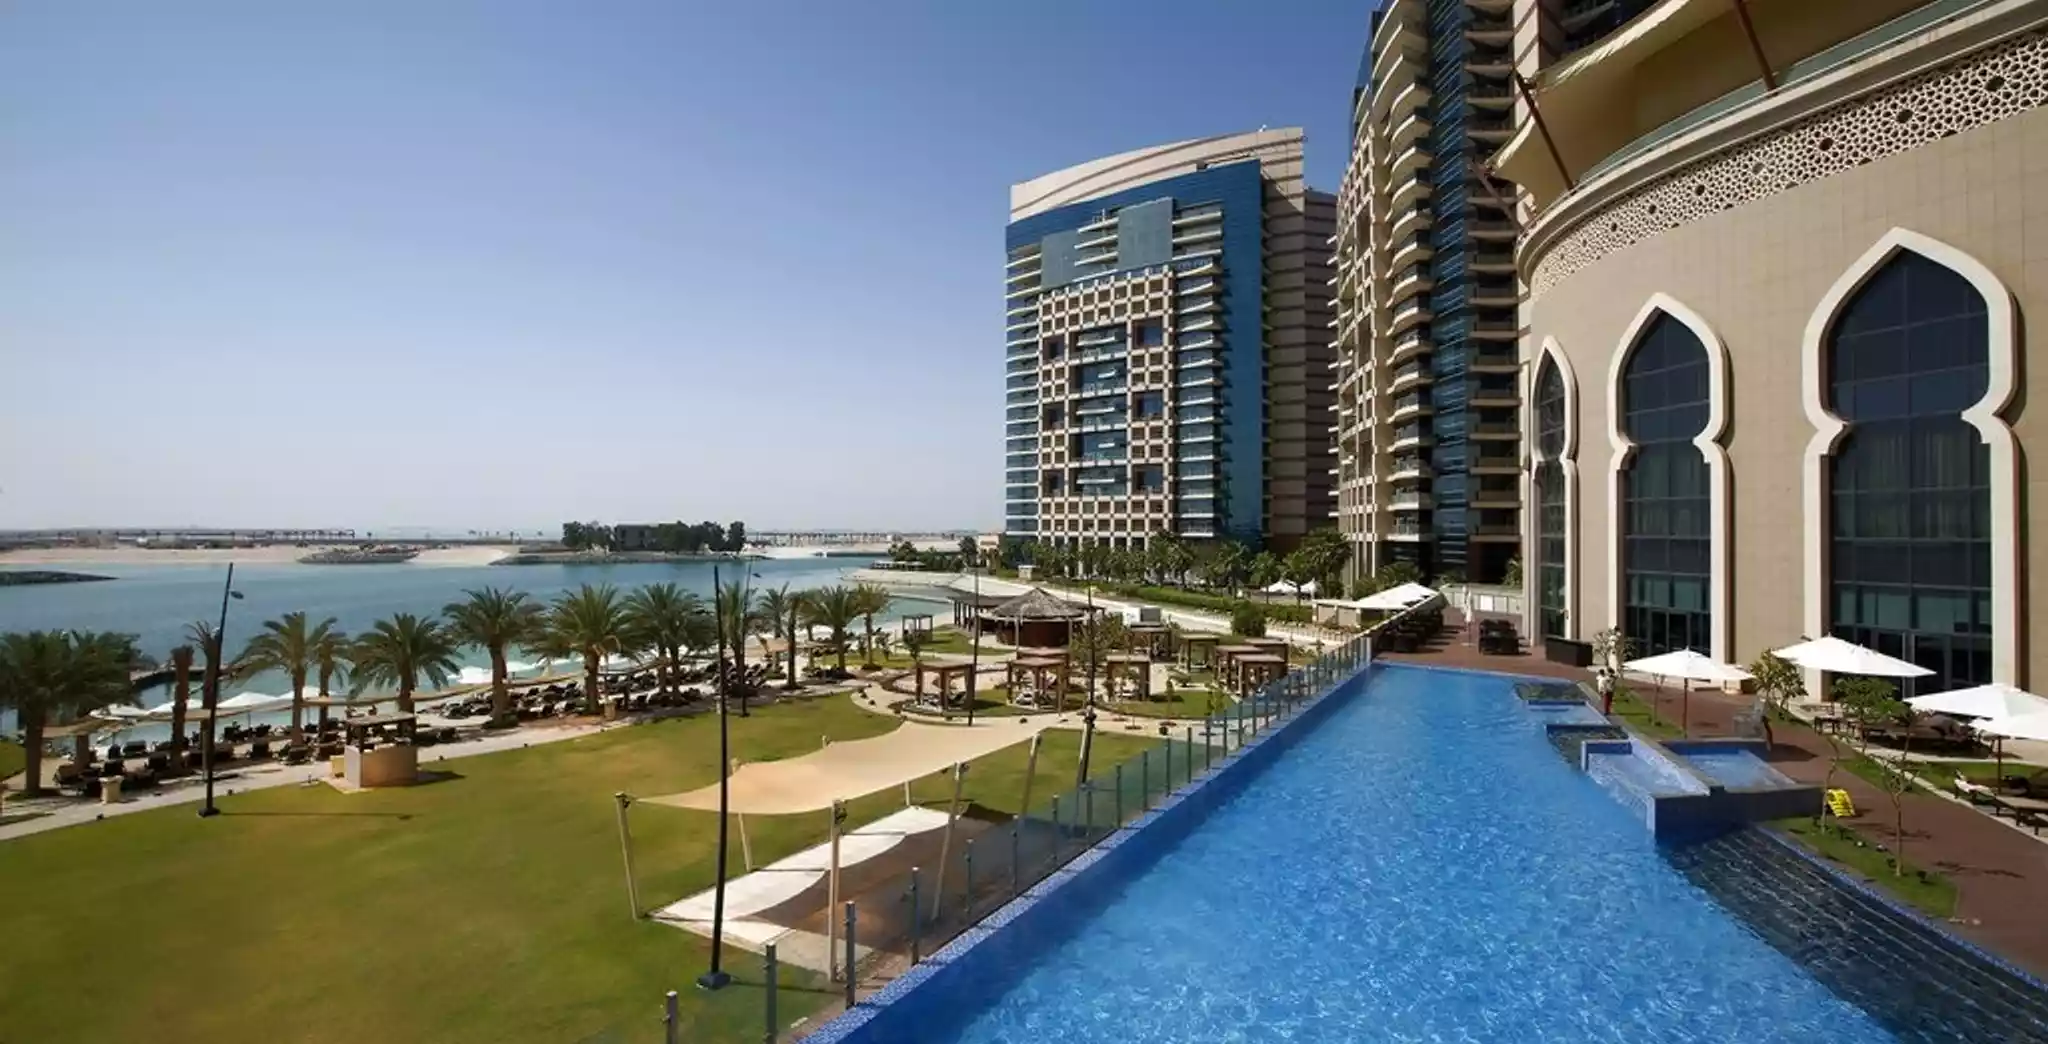 Grand Prix F1 d’Abu Dhabi et Bab Al Qasr Hotel 5*